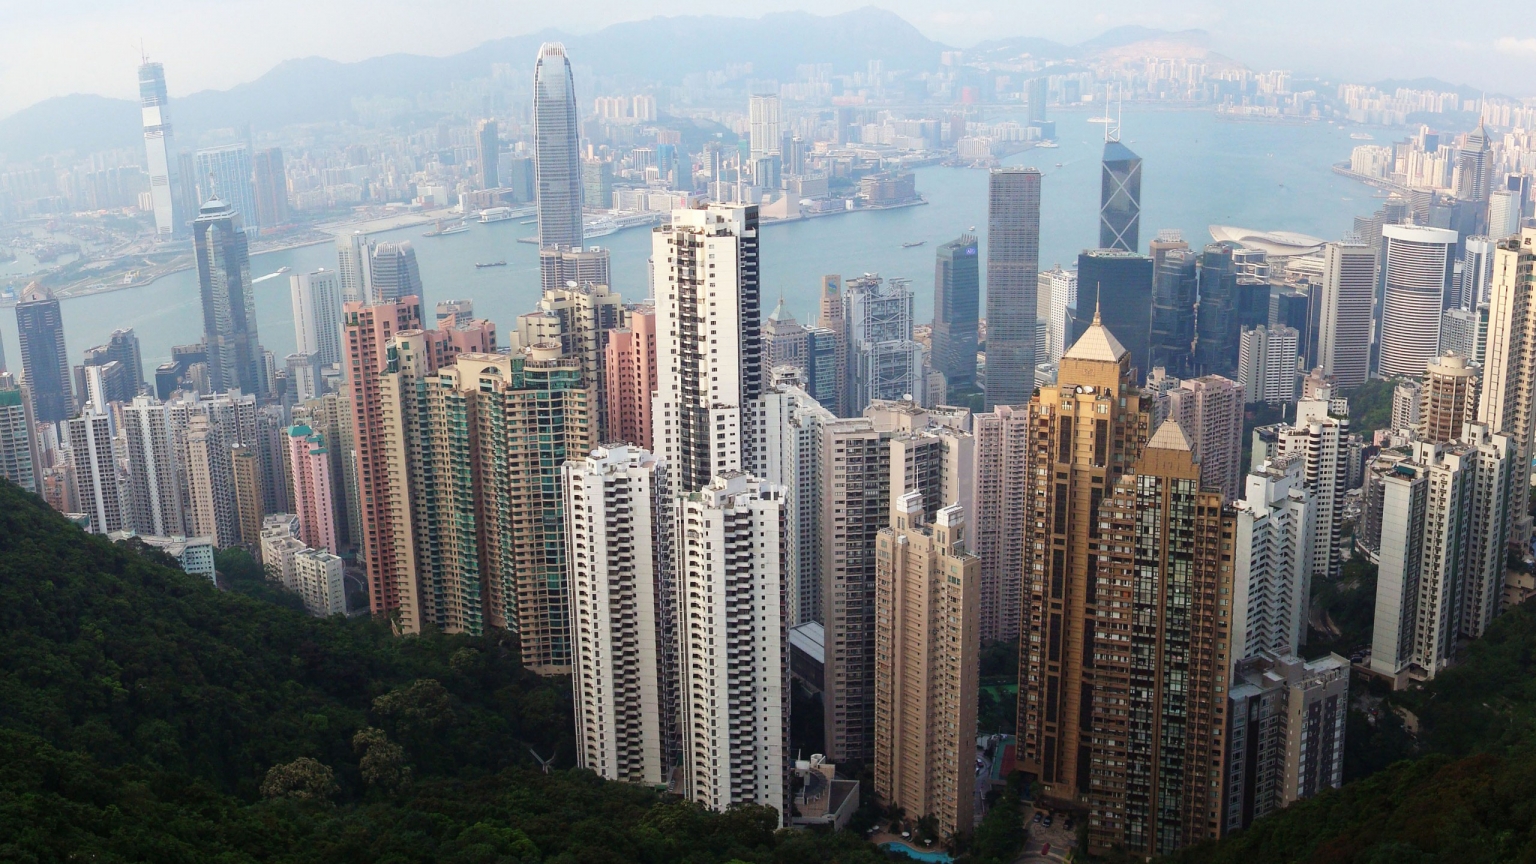 Hong Kong Skyline for 1536 x 864 HDTV resolution